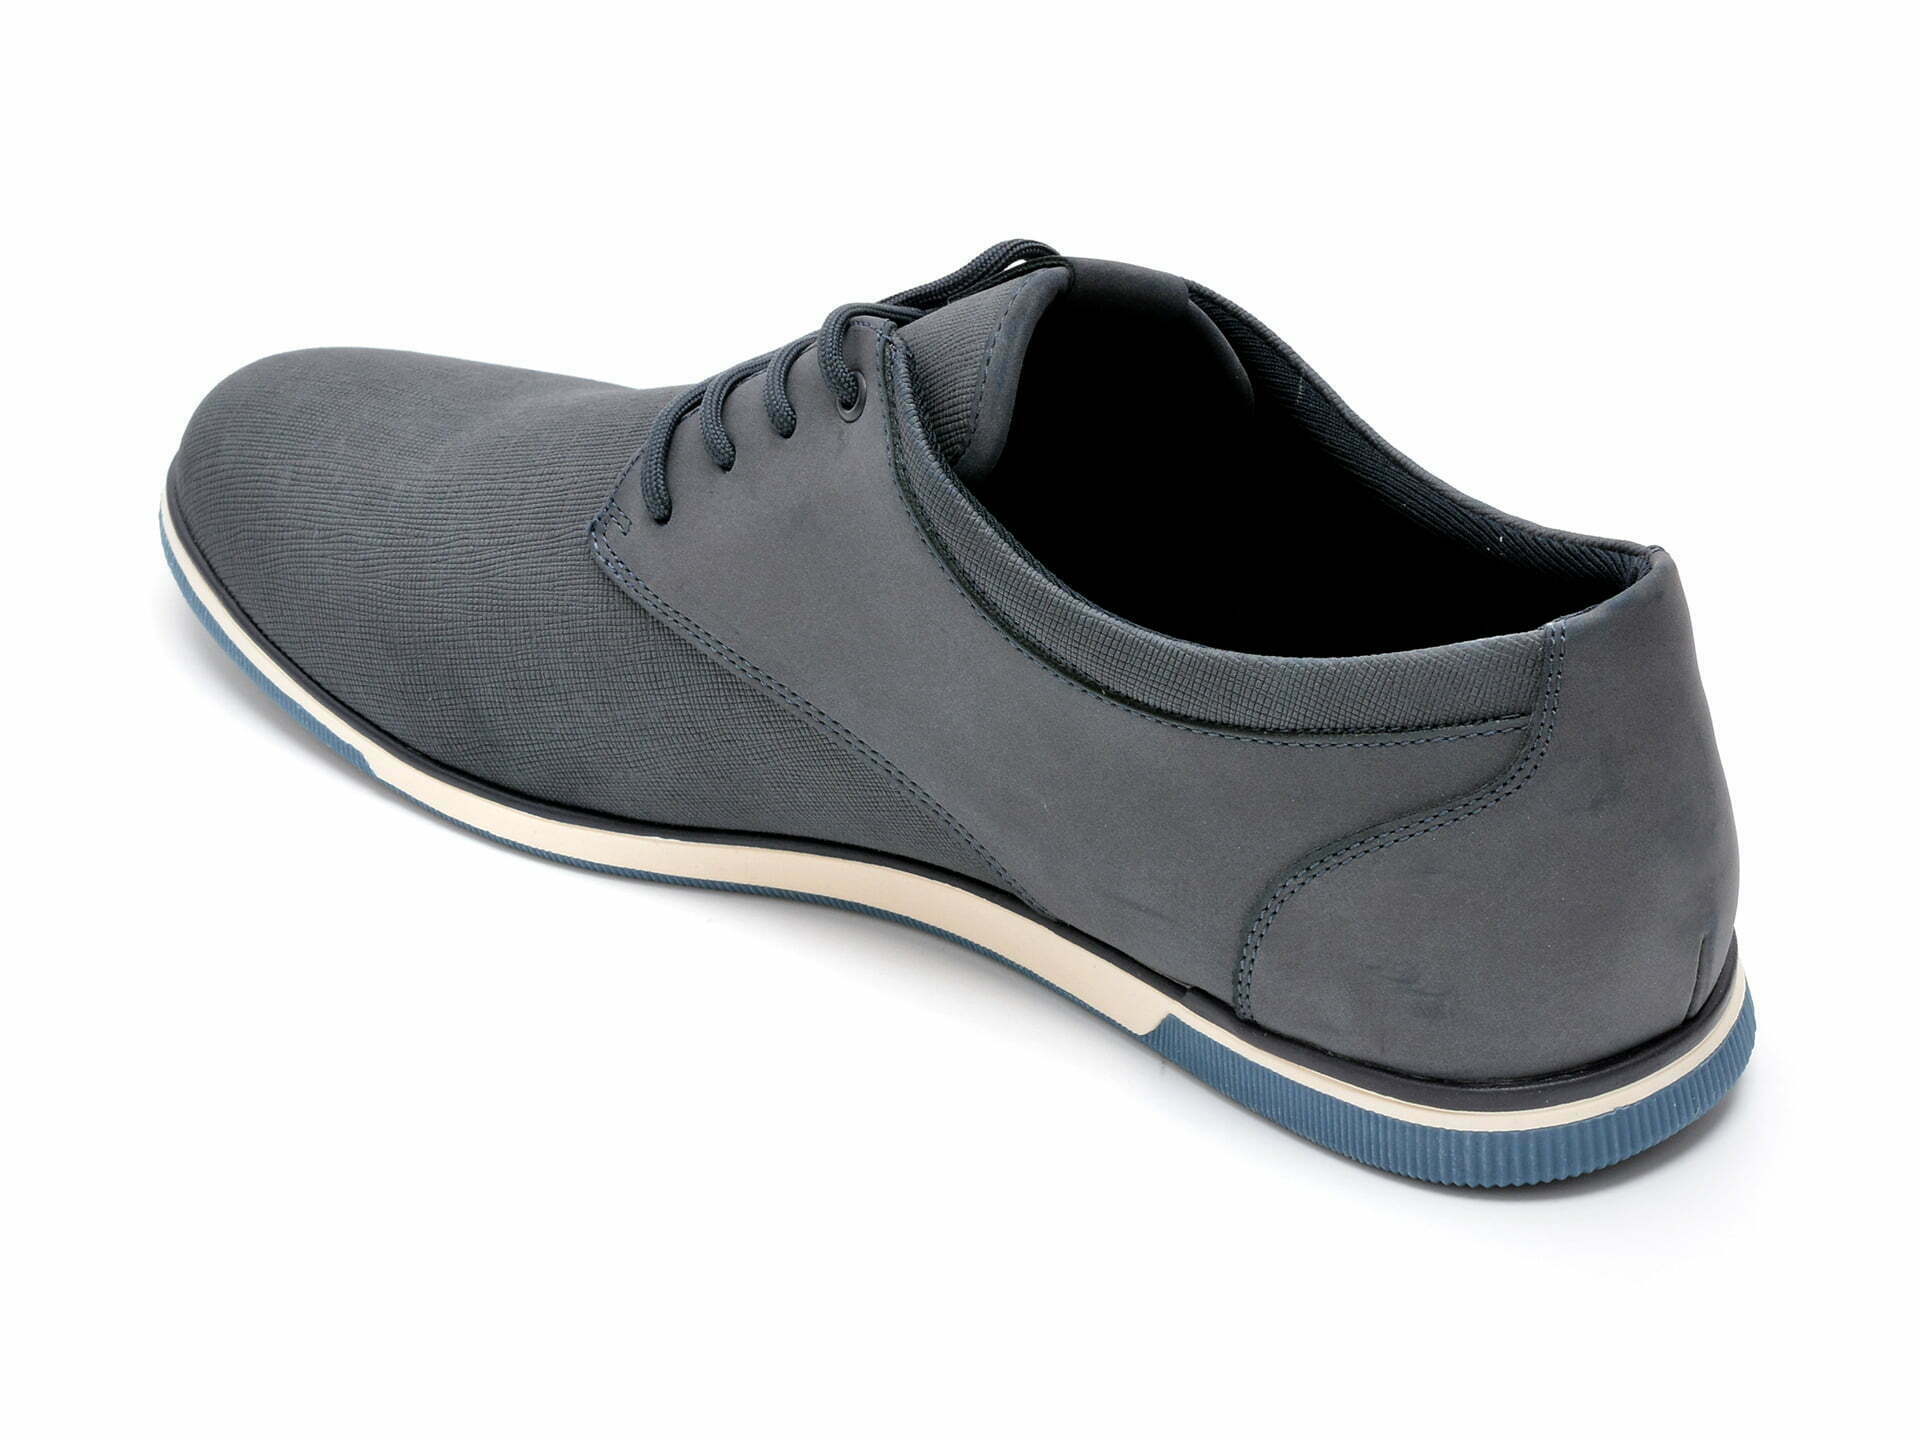 Comandă Încălțăminte Damă, la Reducere  Pantofi sport ALDO bleumarin, HERON410, din piele ecologica Branduri de top ✓